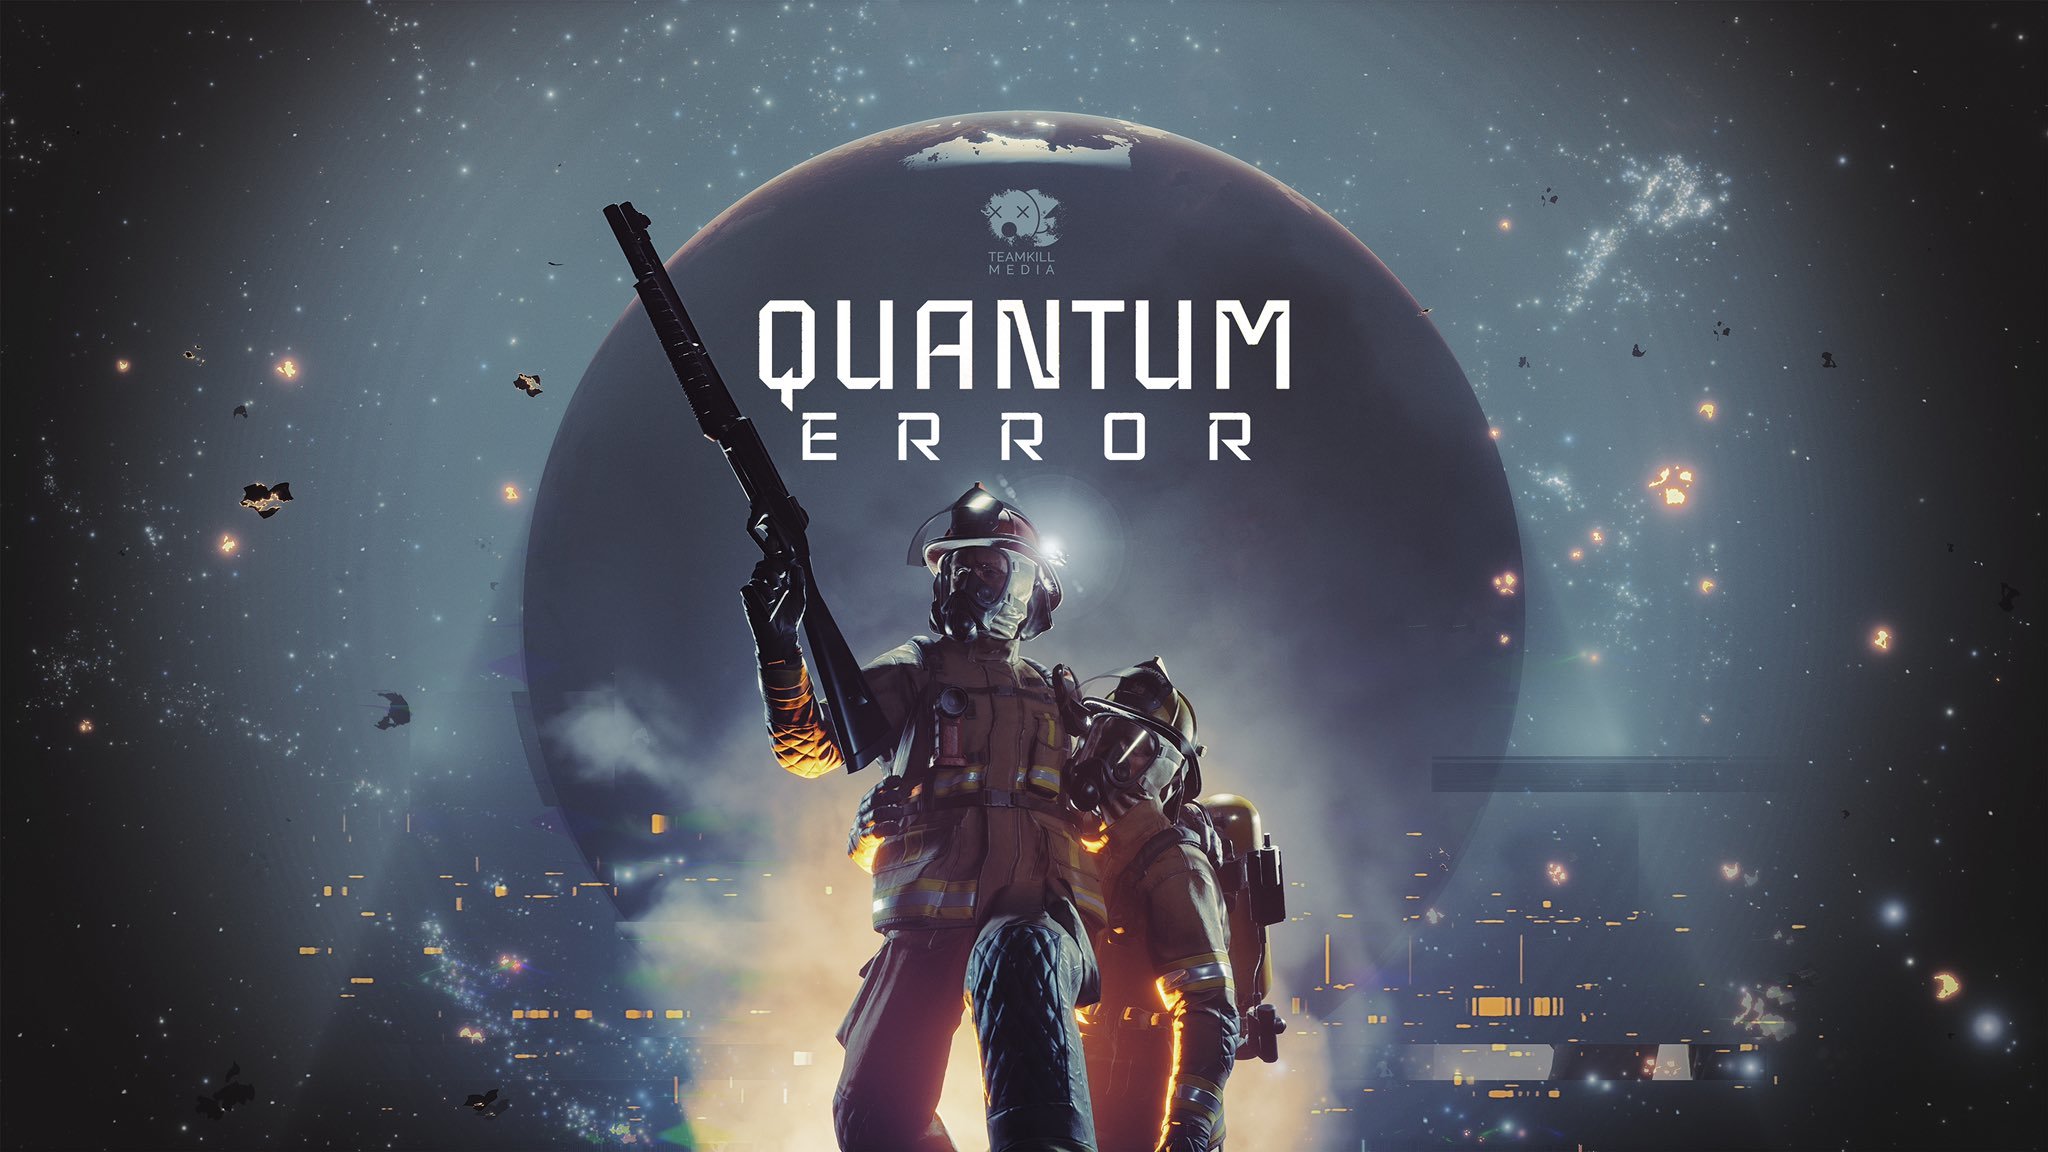 開發商計劃推出《量子誤差》三部曲 以及更多其他遊戯